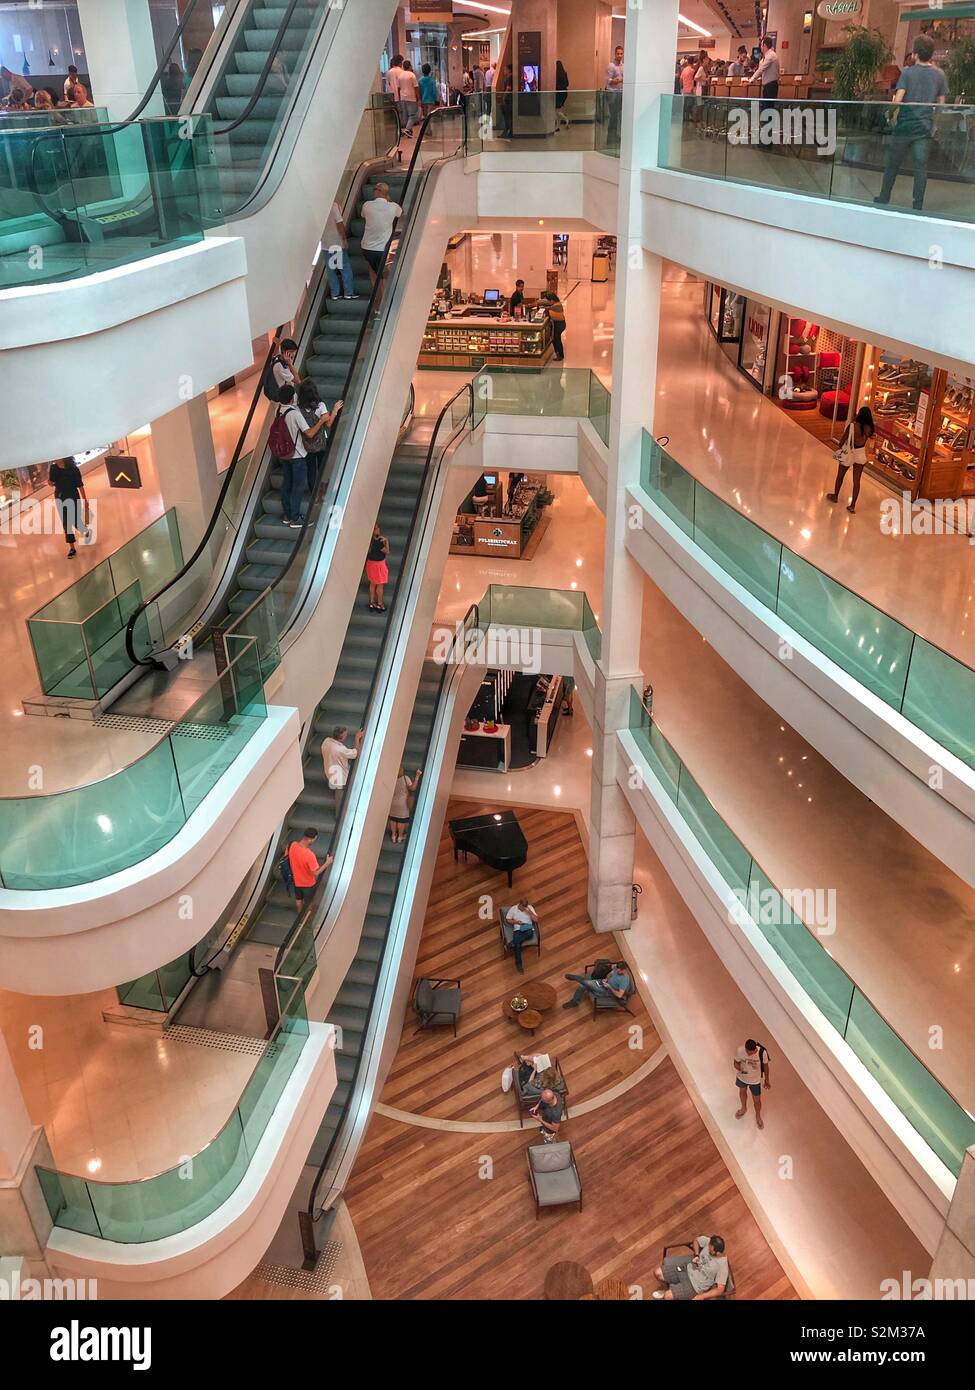 LeBlon shopping mall in Rio de Janeiro, Brazil. Stock Photo